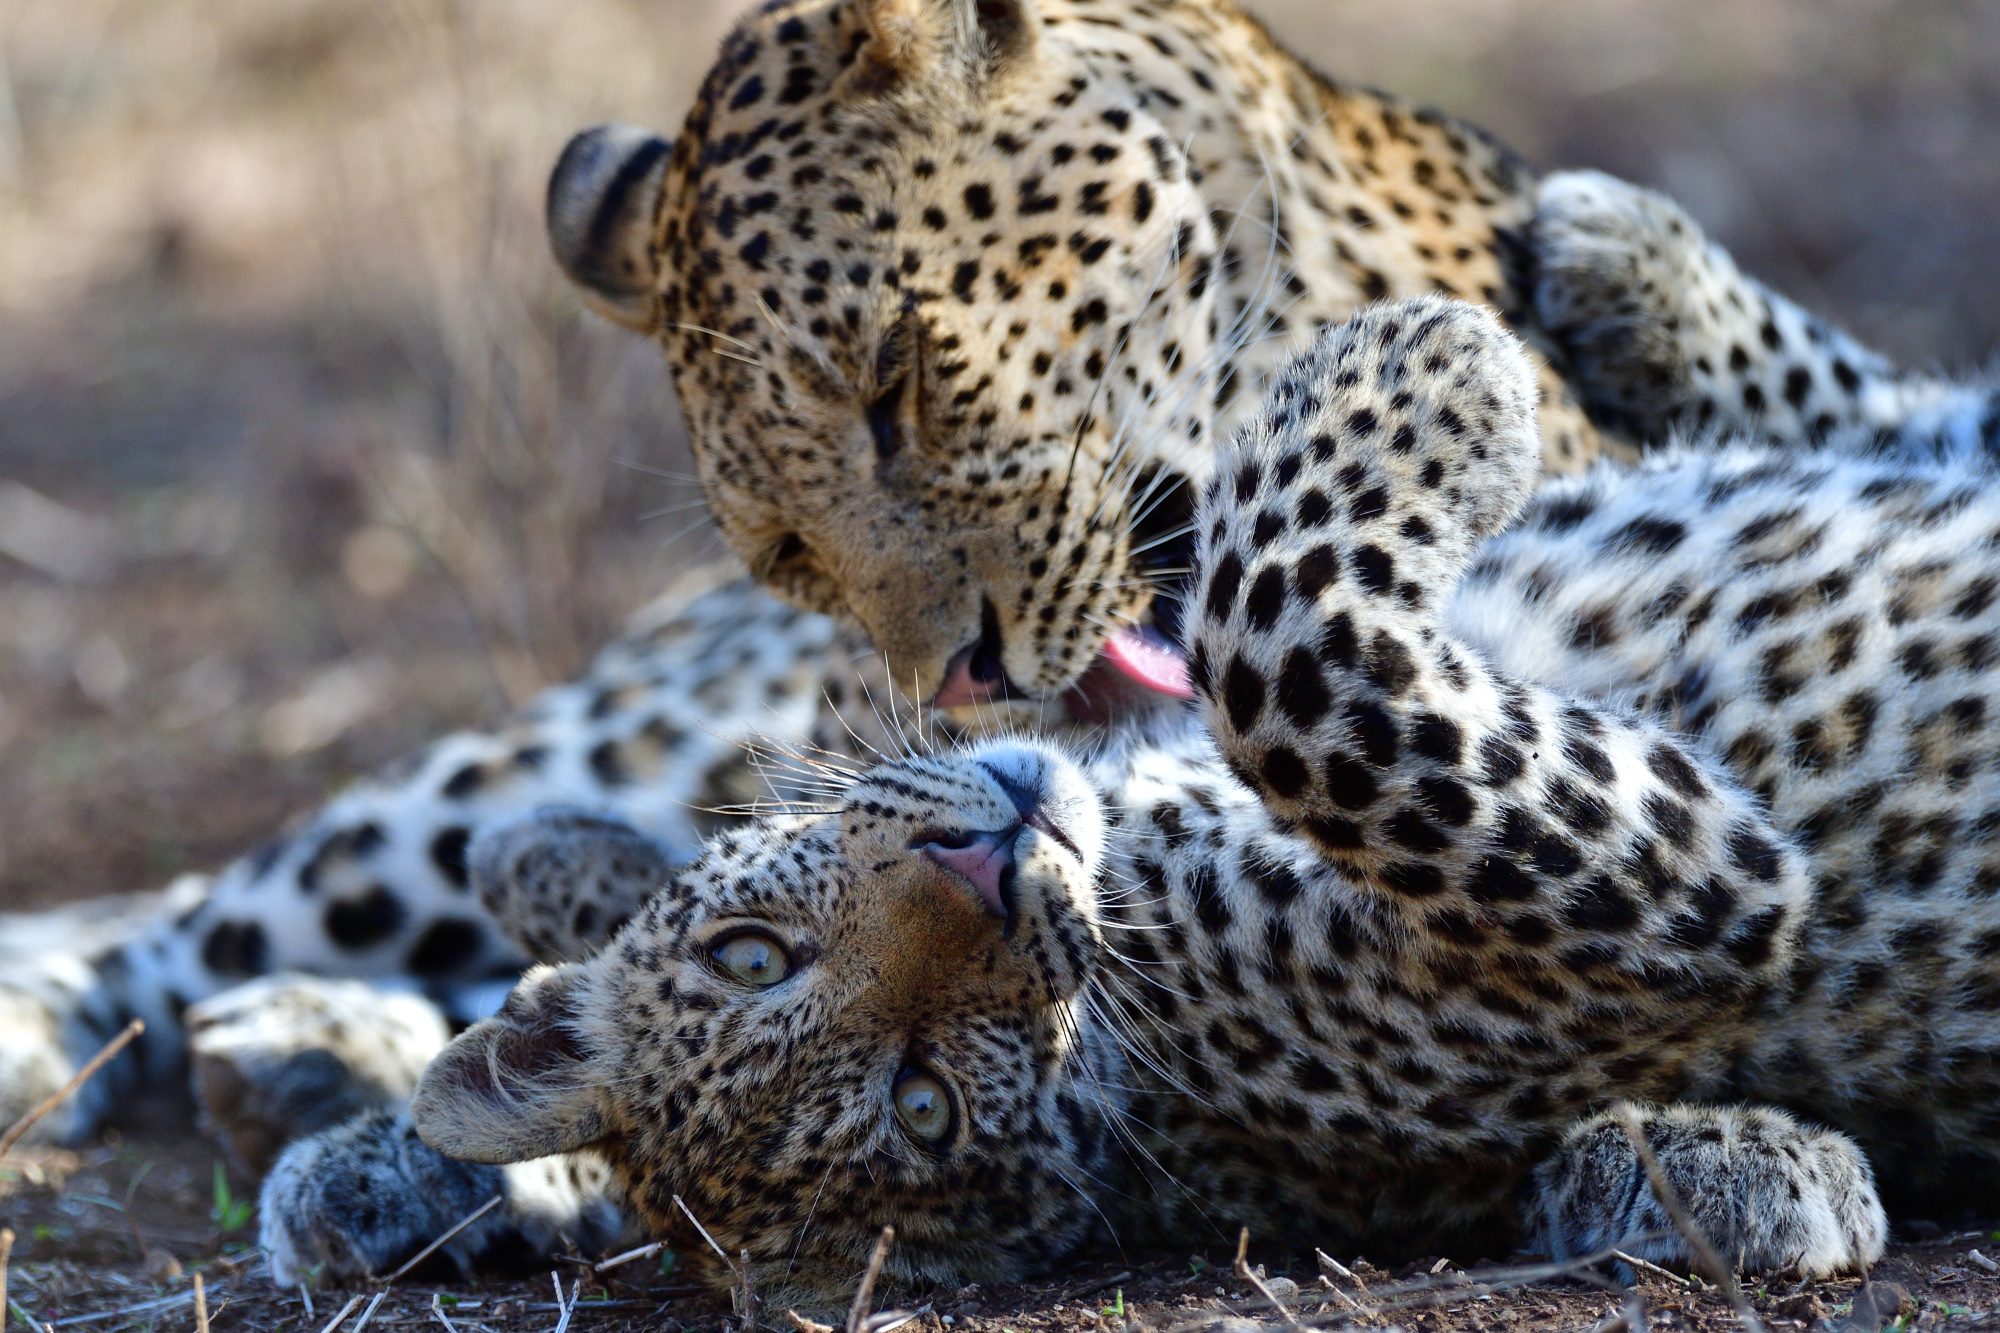 アフリカに野生の輝きを追ってpart 1 動物たちの一瞬の表情を狙う サンディスク この瞬間を残したい